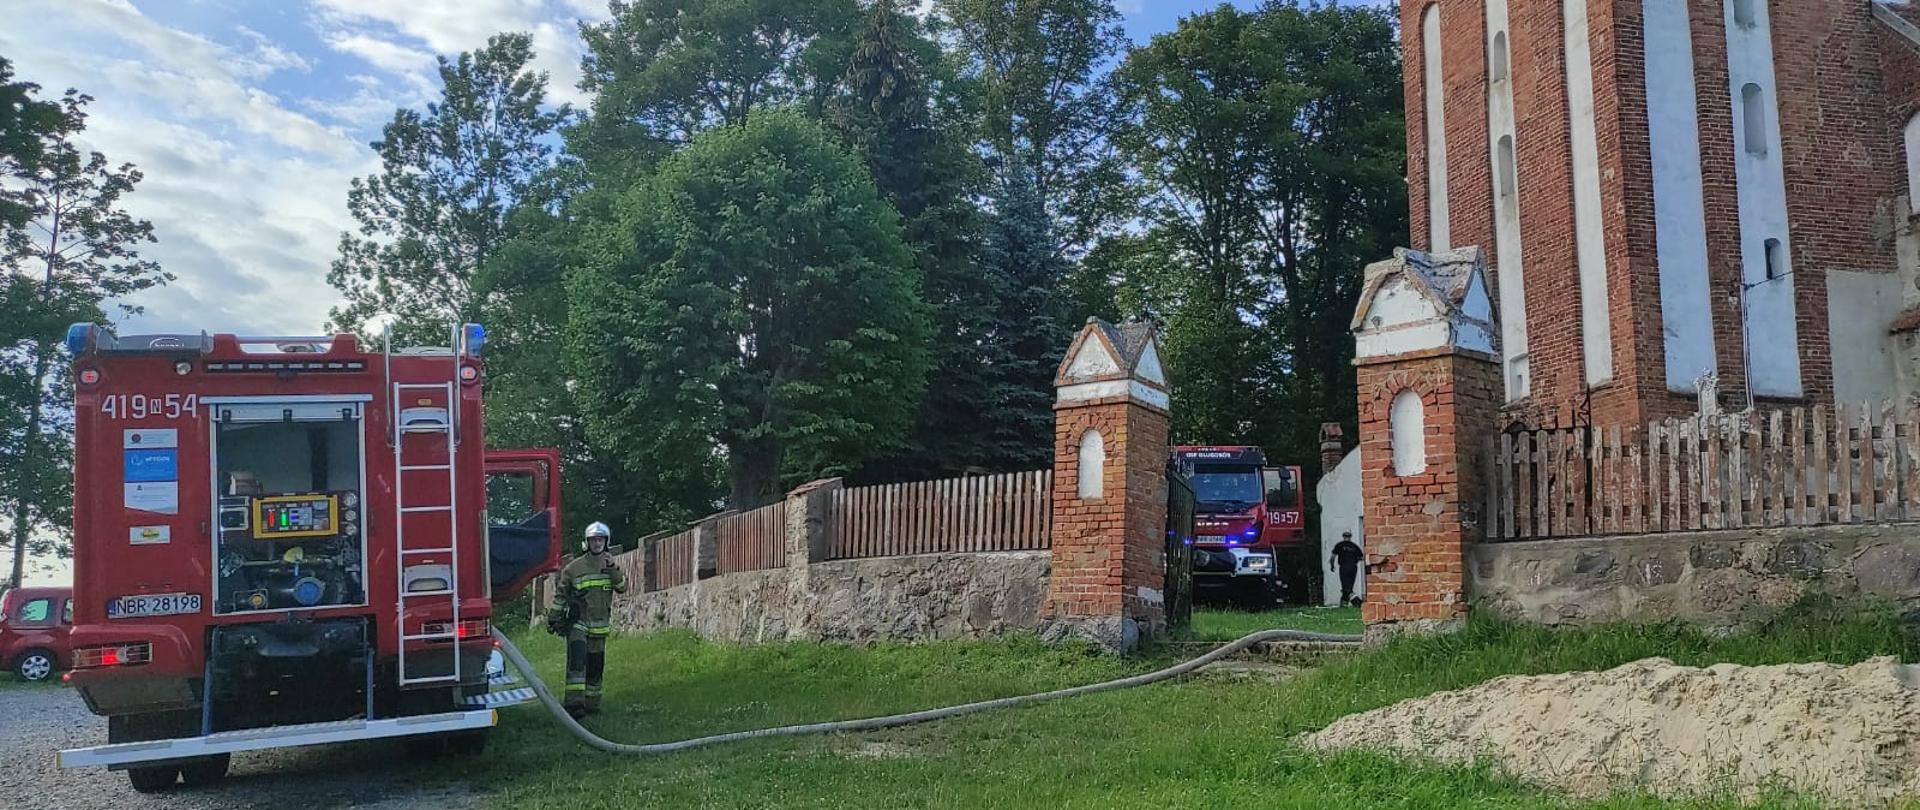 Z prawej strony obiekt kościoła z cegły, ogrodzenie z kamieni i desek. Przez bramę wejściową widoczne auto strażackie. Z lewej strony samochód strażacki i strażak. W oddali zielone drzewa.